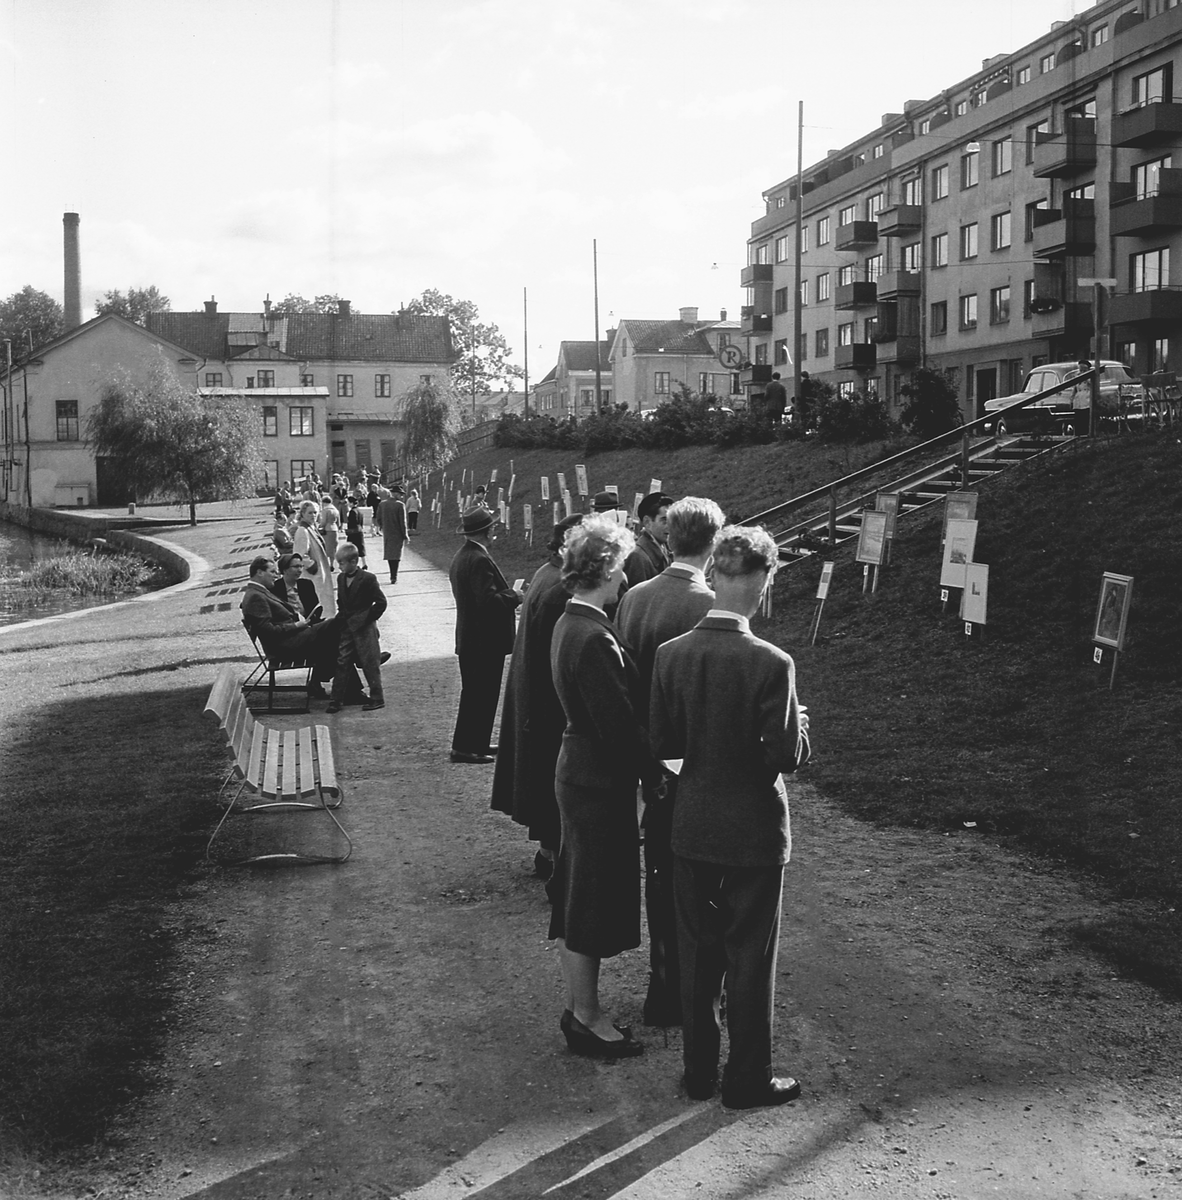 Serie bilder från Lions, minst sagt, öppna konstutställning i Linköping. Konstverken exponerades i slänten vid strandpromenaden utmed Hamngatan. Tills exakt datering klargörs skrivs här omkring år 1950.